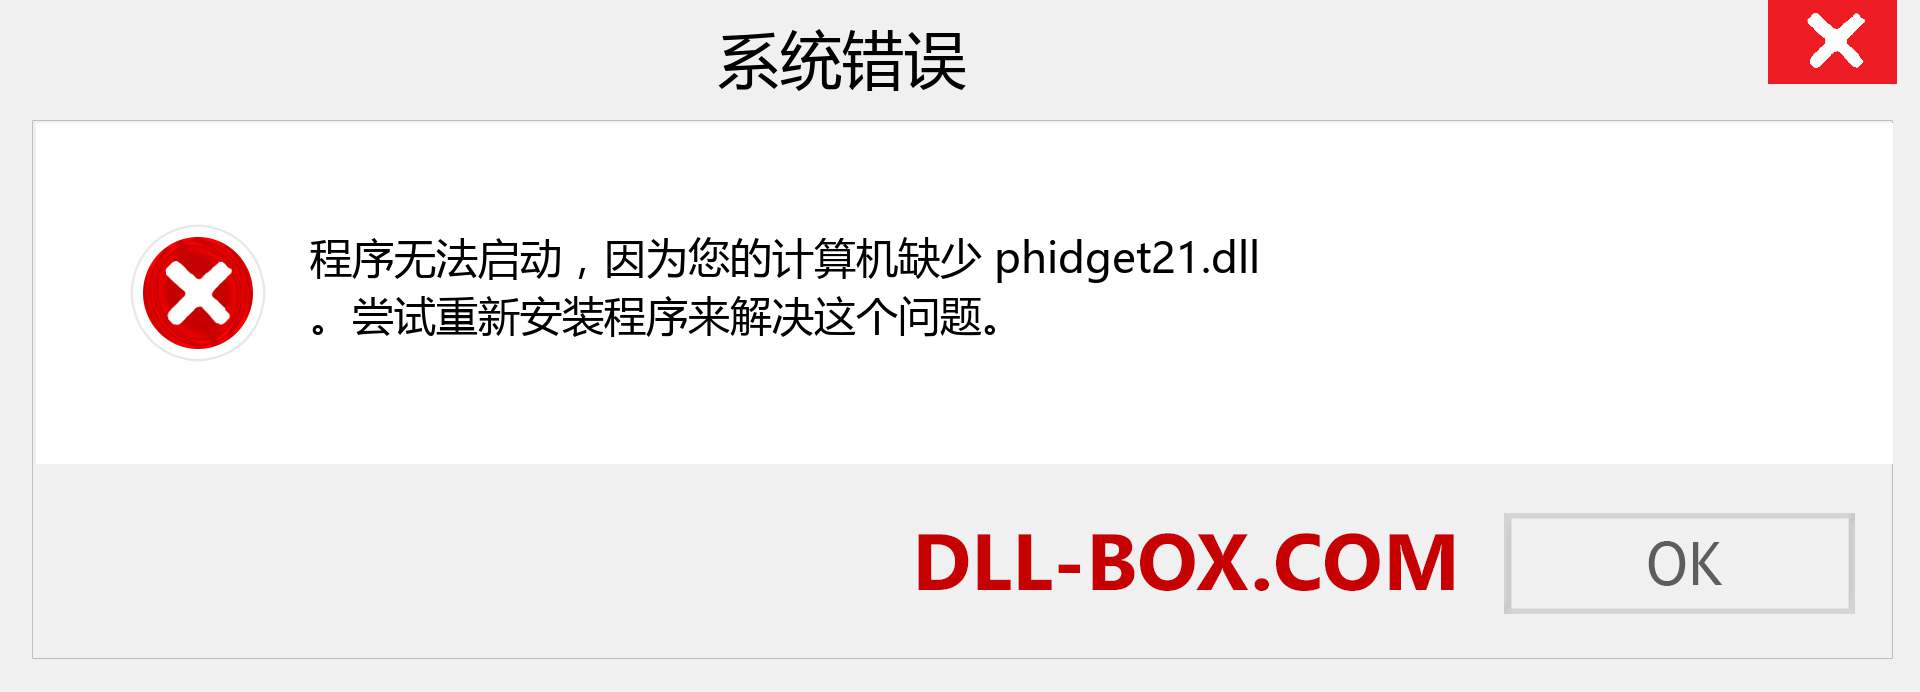 phidget21.dll 文件丢失？。 适用于 Windows 7、8、10 的下载 - 修复 Windows、照片、图像上的 phidget21 dll 丢失错误